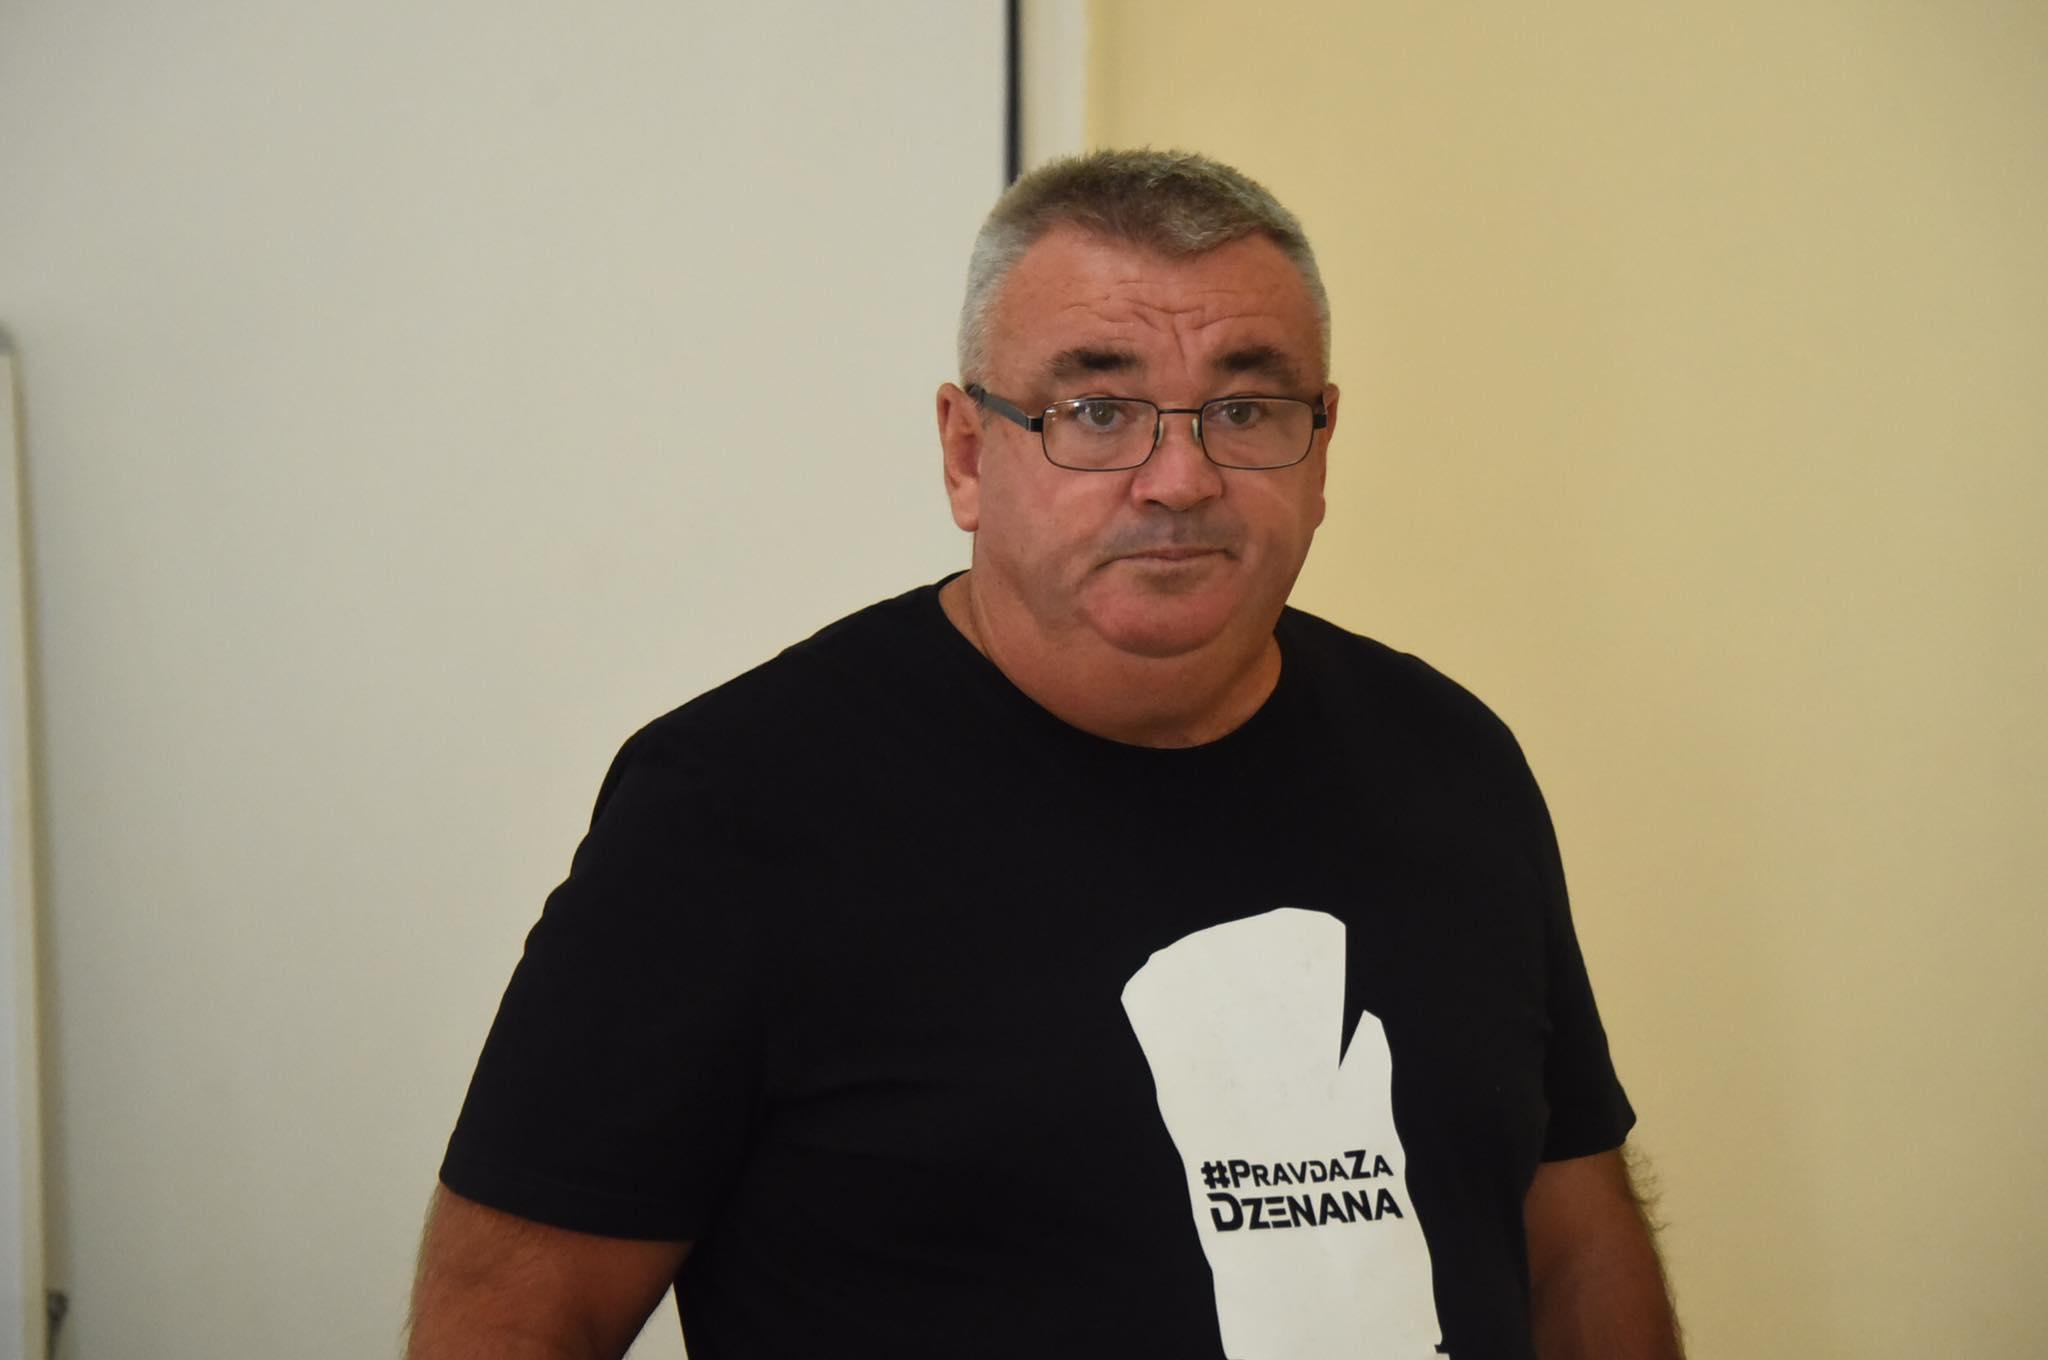 Muriz Memić: Dalida Burzić mi je rekla da ga nije htio ubiti, da je bilo naguravanje